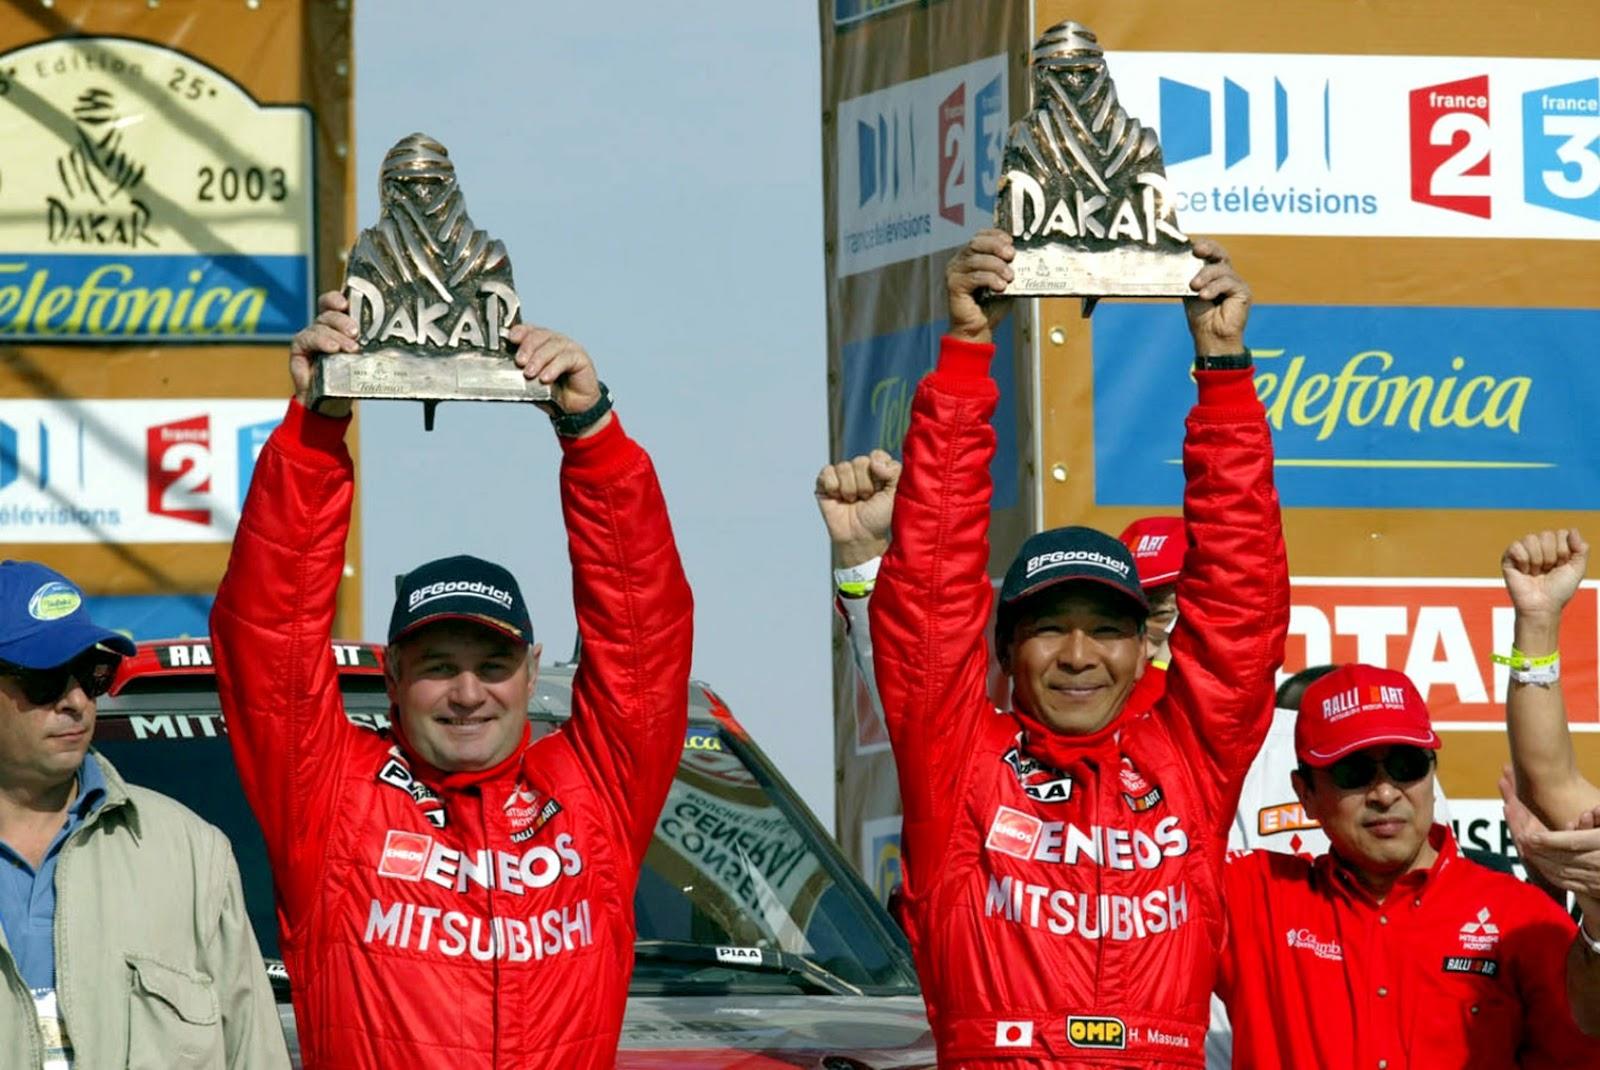 Хироси Масуока (справа). Японский раллист, автогонщик, выигравший ралли-рейд Париж — Дакар дважды: в 2002 и 2003 годах. Выступал на автомобилях Mitsubishi. Всего, с 1987 по 2009 год, провел 21 гонку в рамках «Дакара»